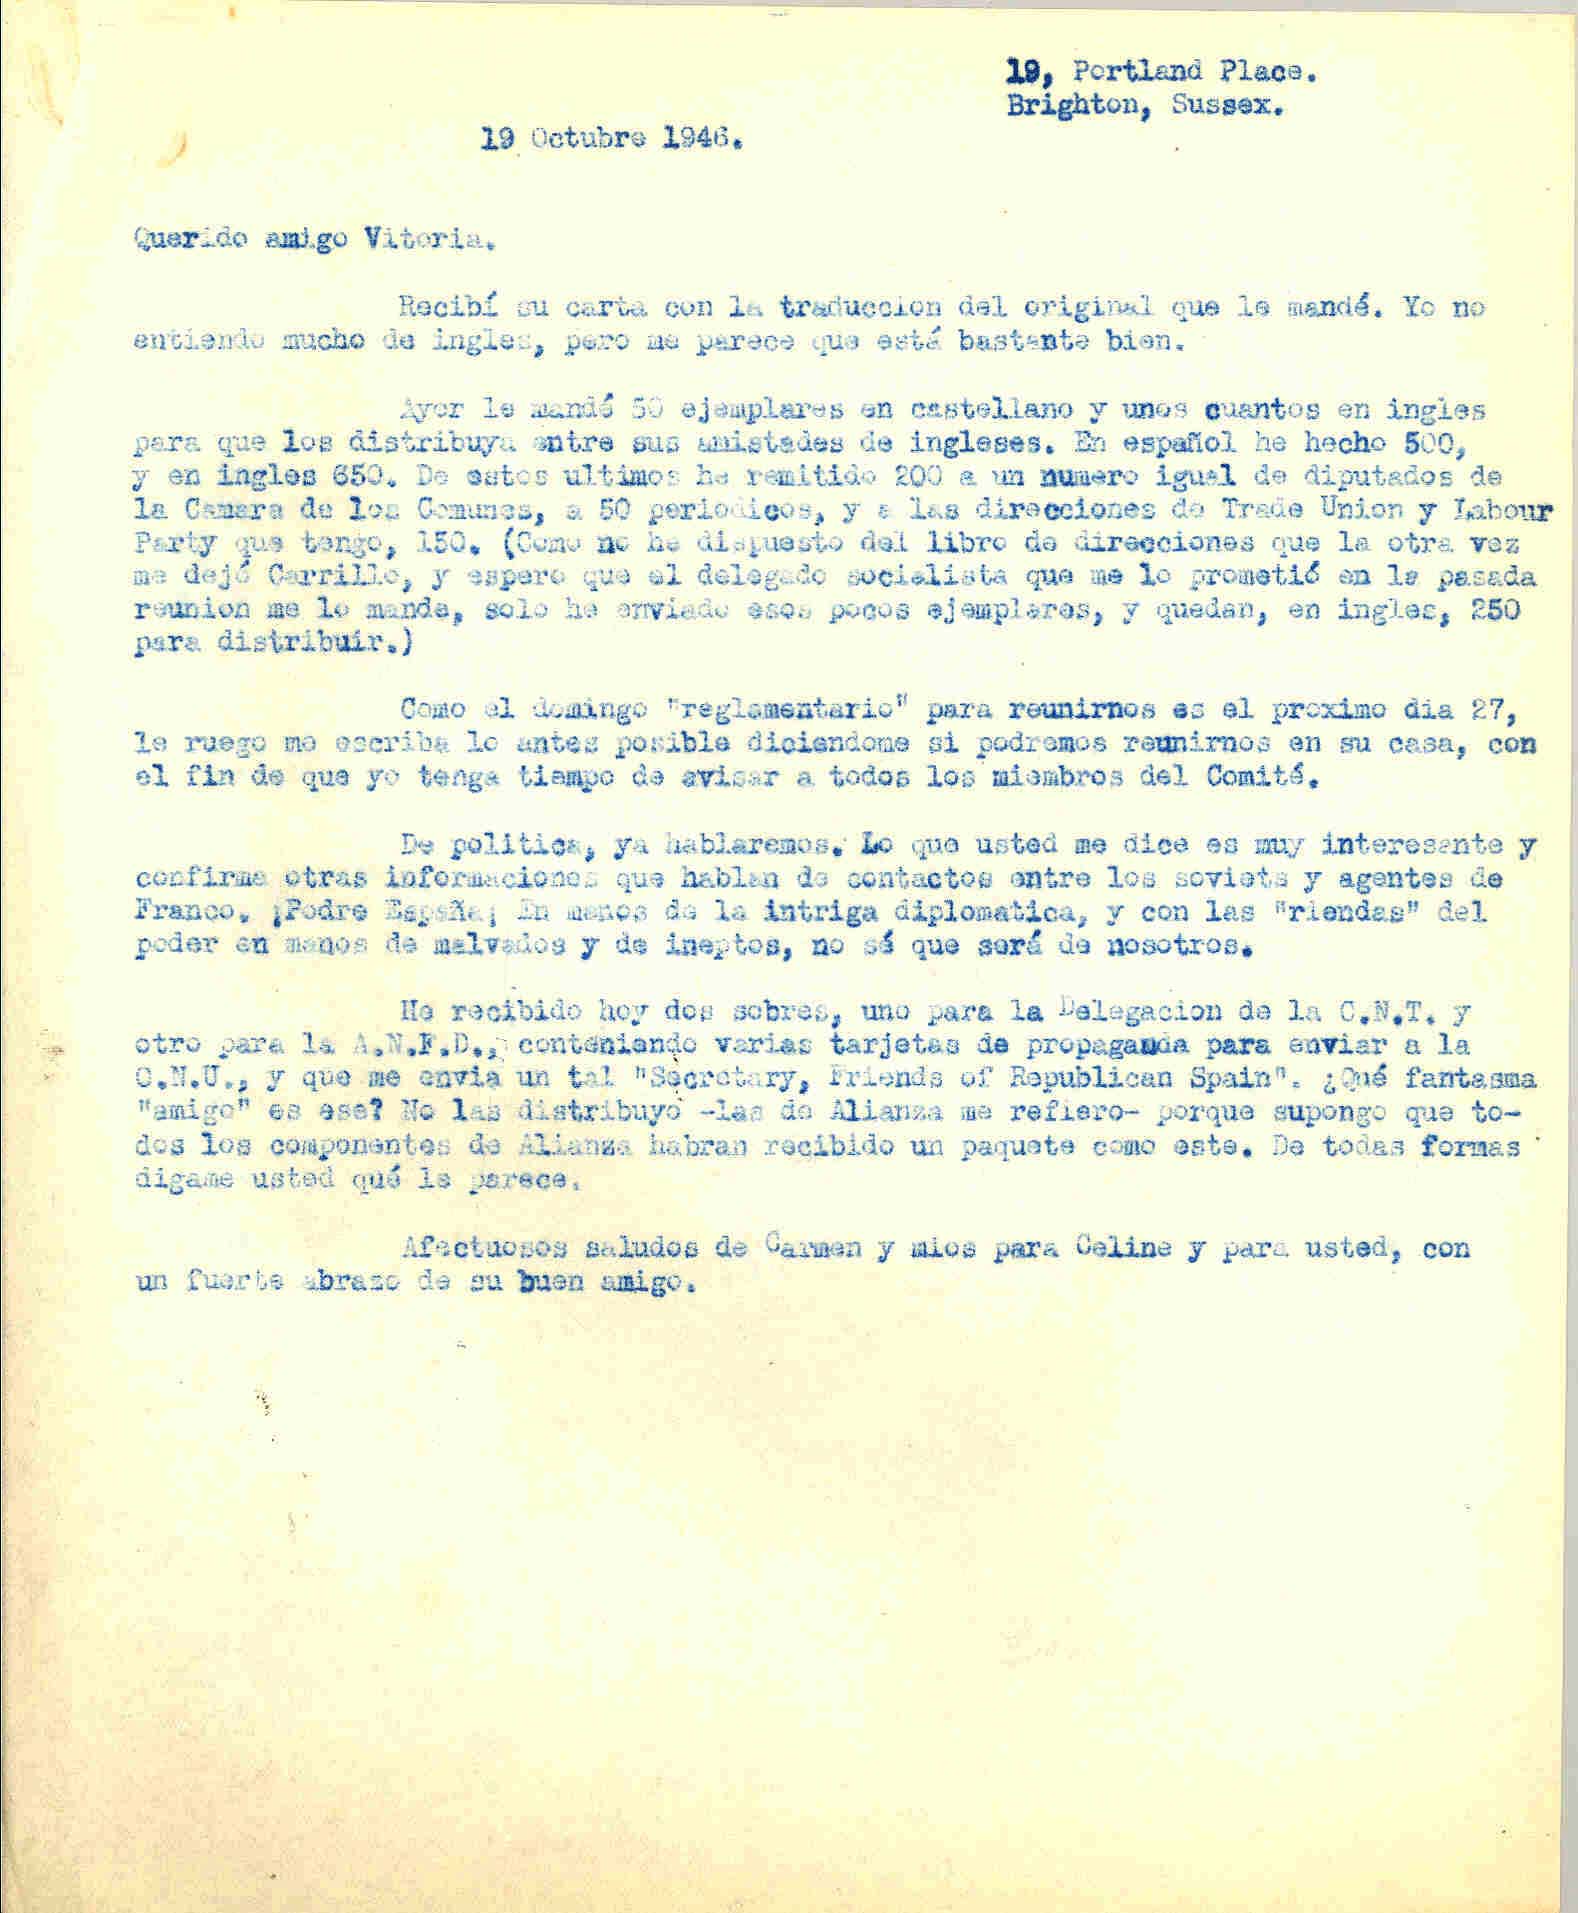 Carta a Roque Victoria hablando del envío de las copias del manifiesto de la ANFD y de un paquete recibido por Friends Of Republican Spain, los cuales no sabe quienes son.